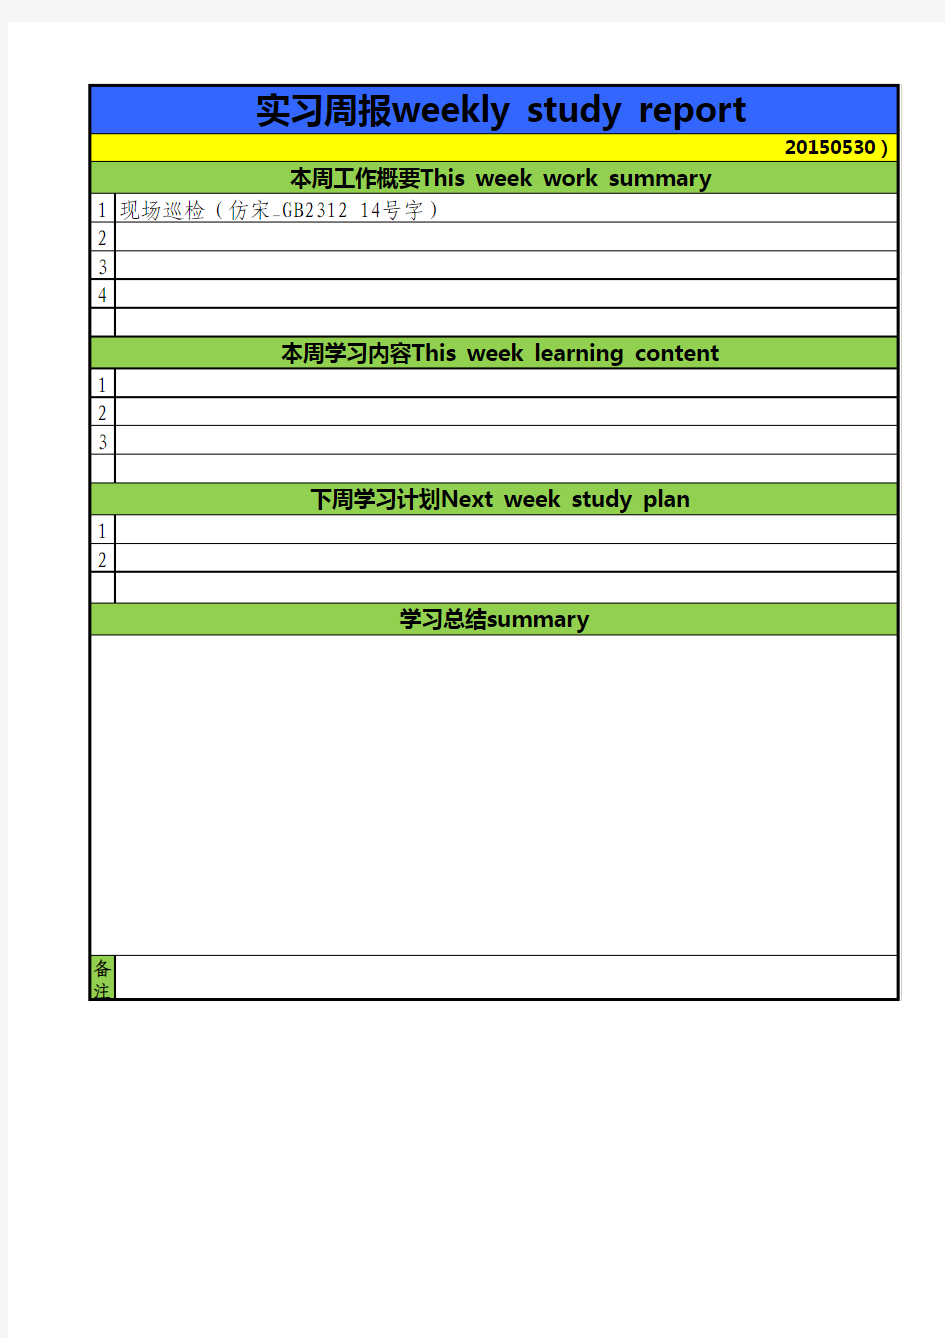 实习周报模板Attachment one、weekly study report model